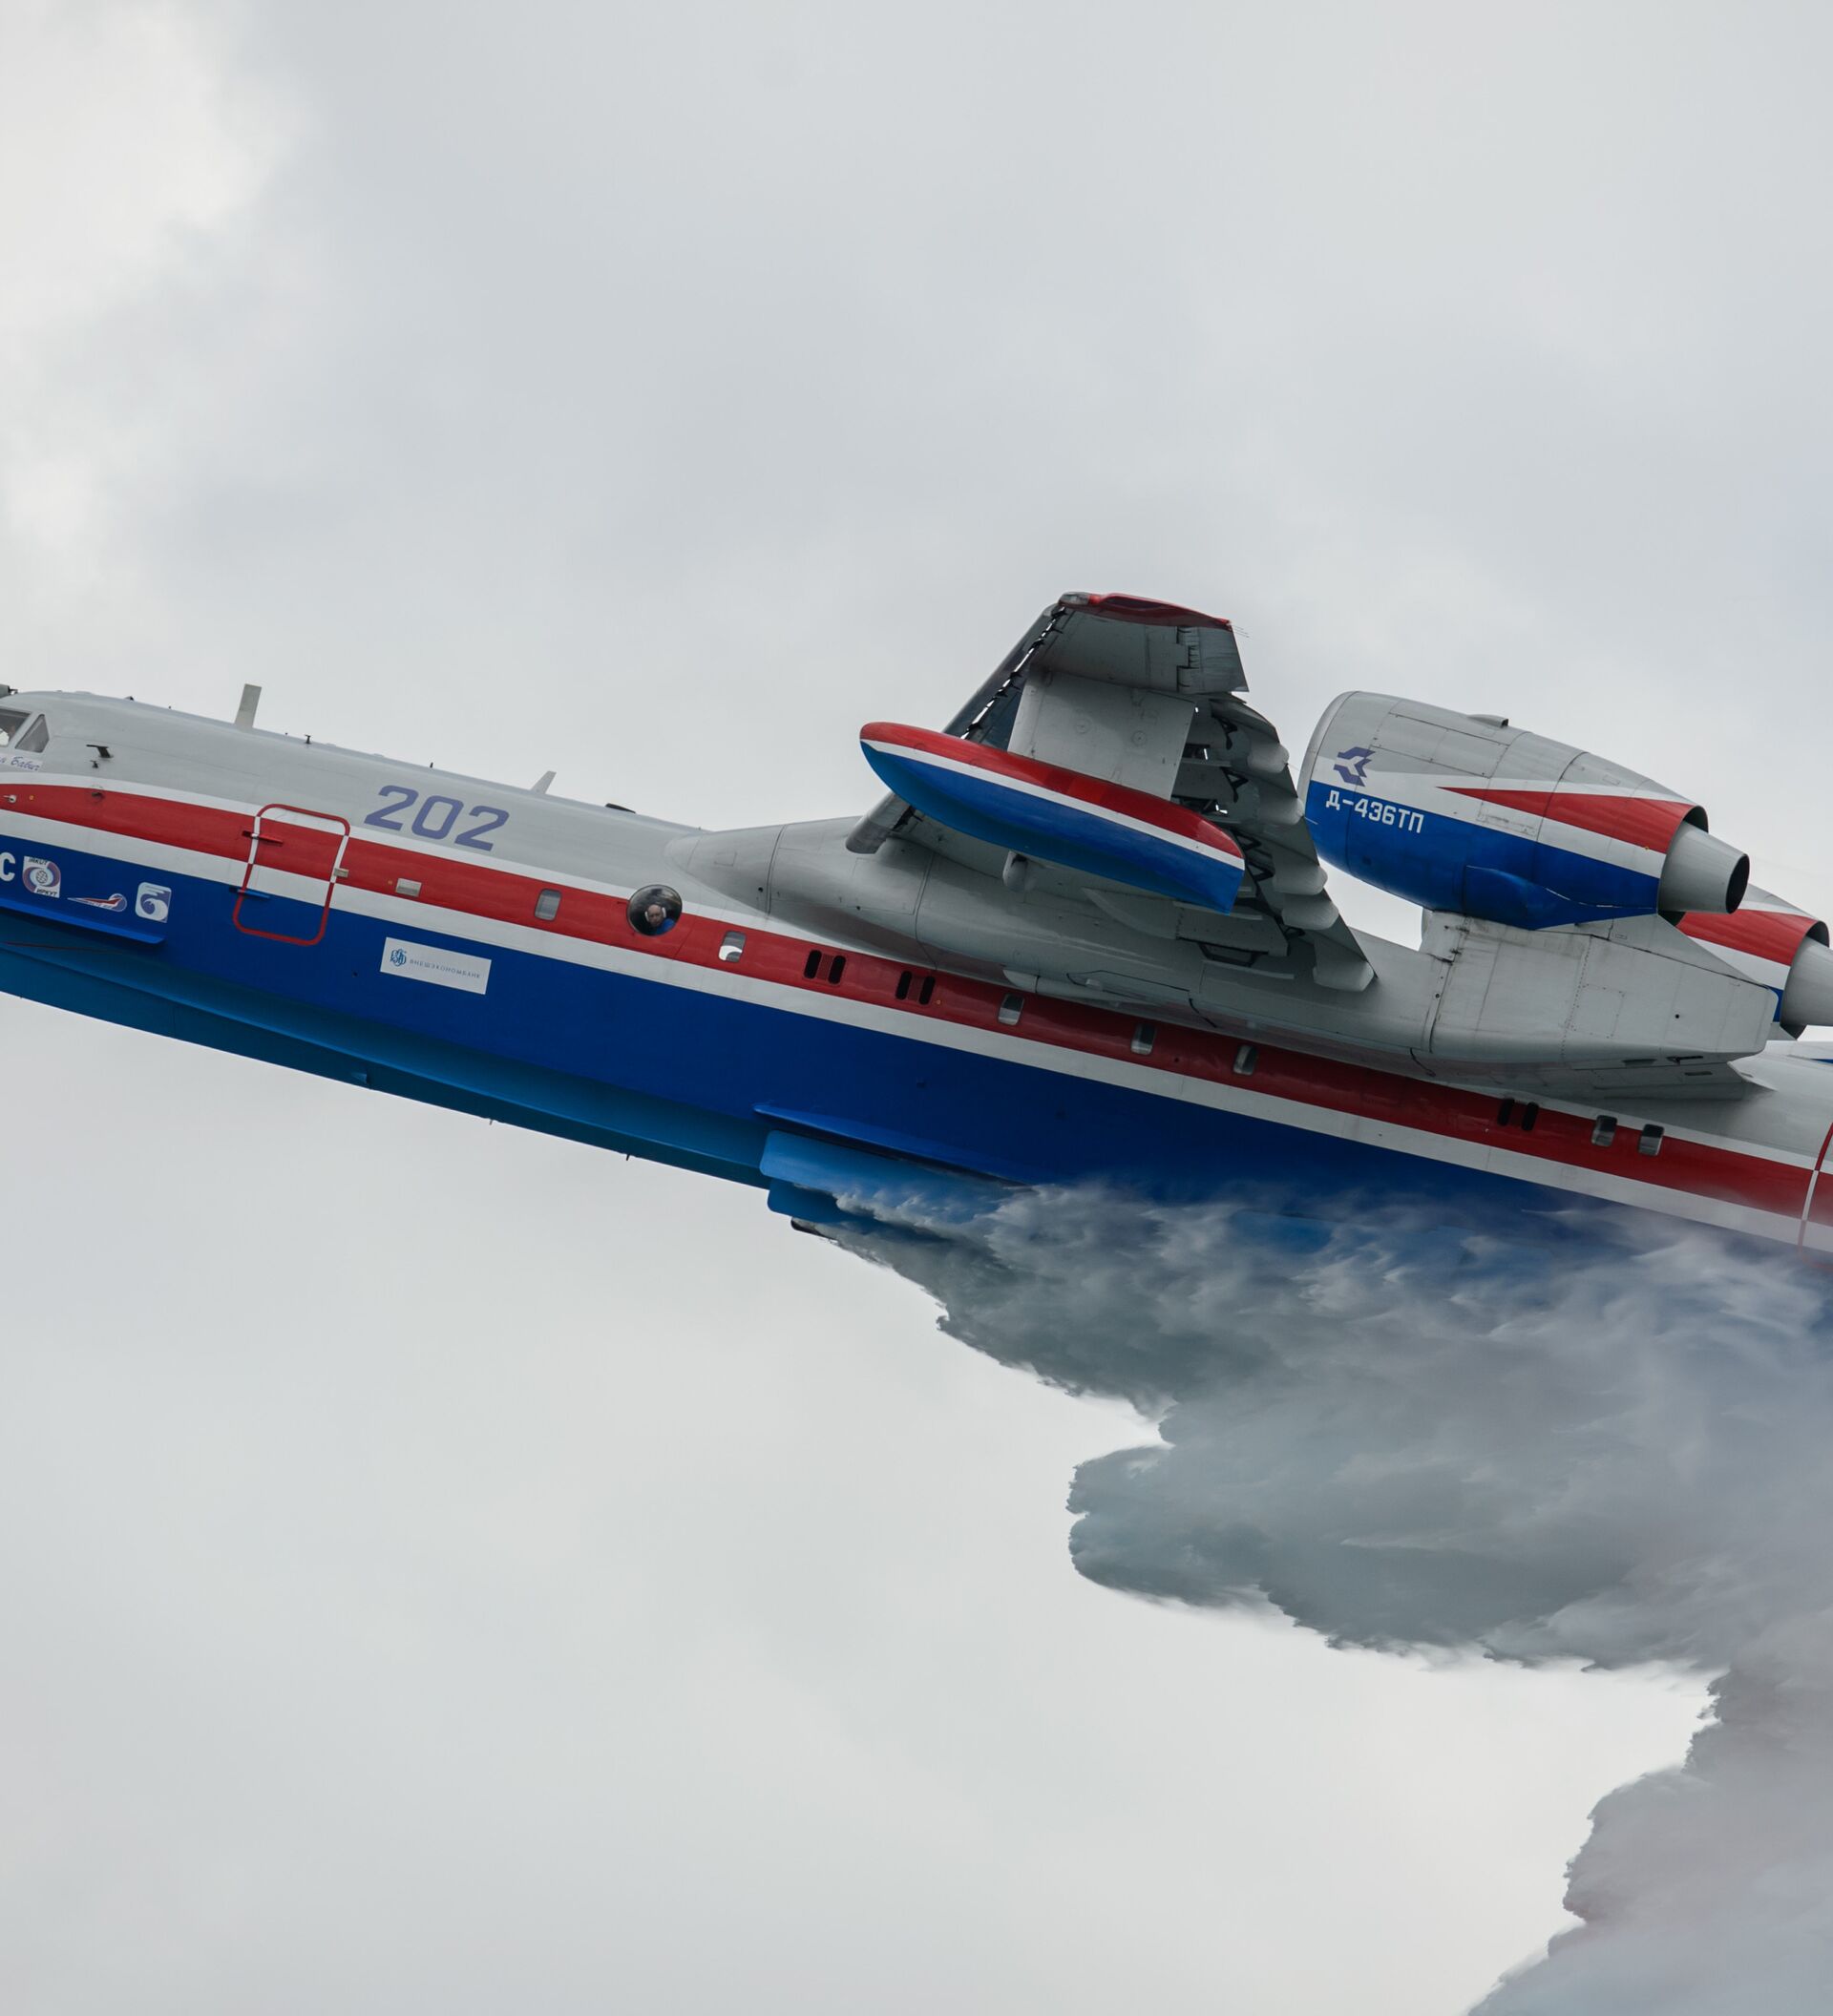 Rússia quer produzir em série o exótico avião anfíbio Beriev Be-200